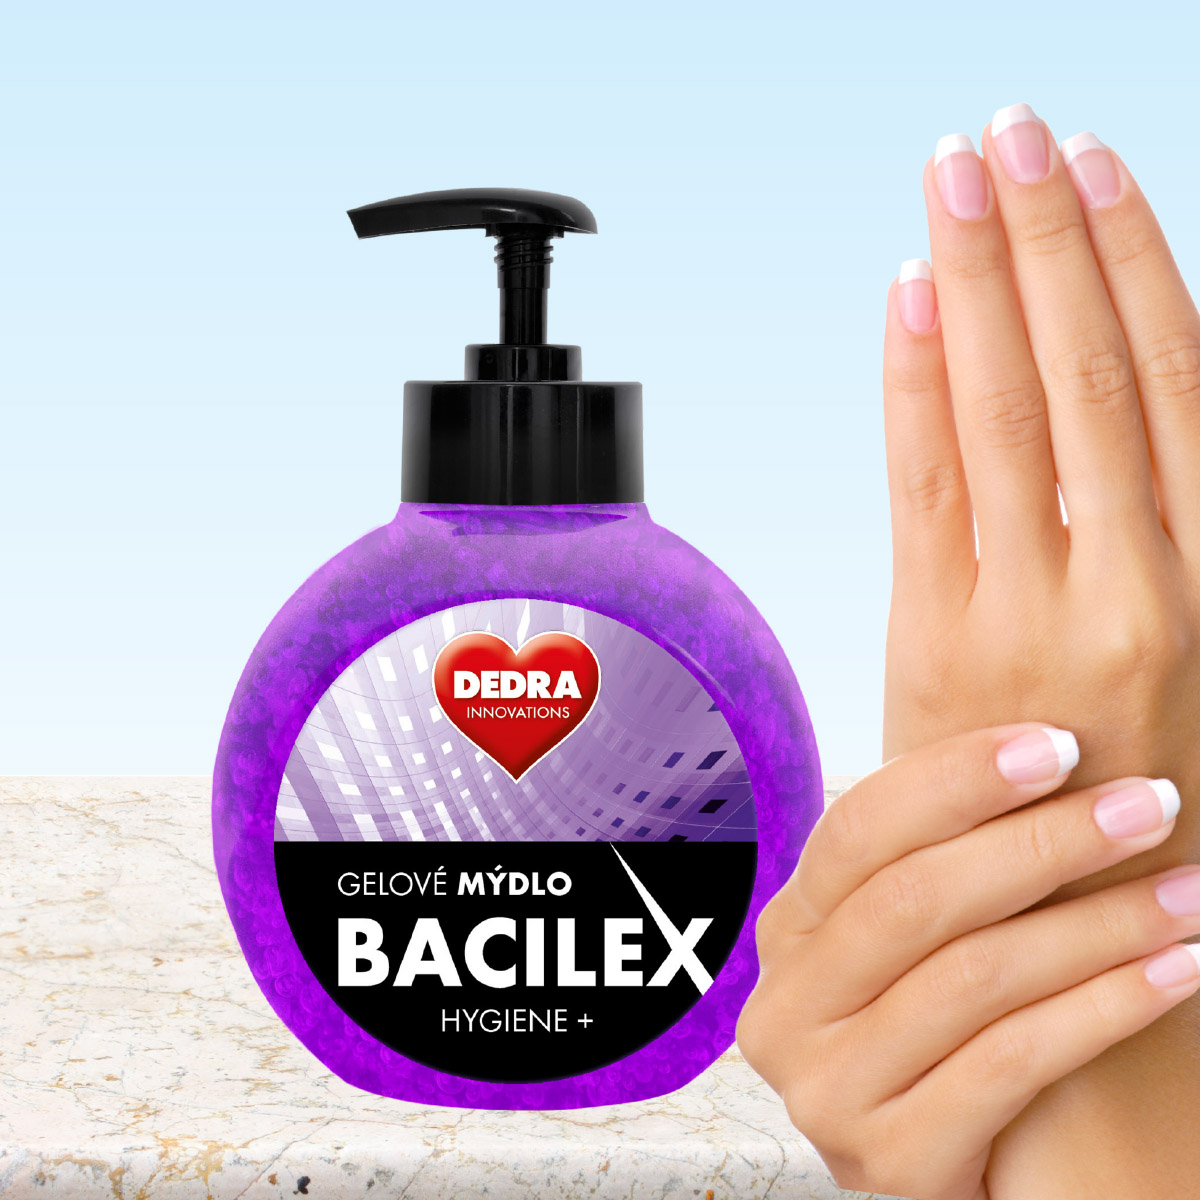 Gélové mydlo s antimikrobiálnou prísadou BACILEX® HYGIENE+